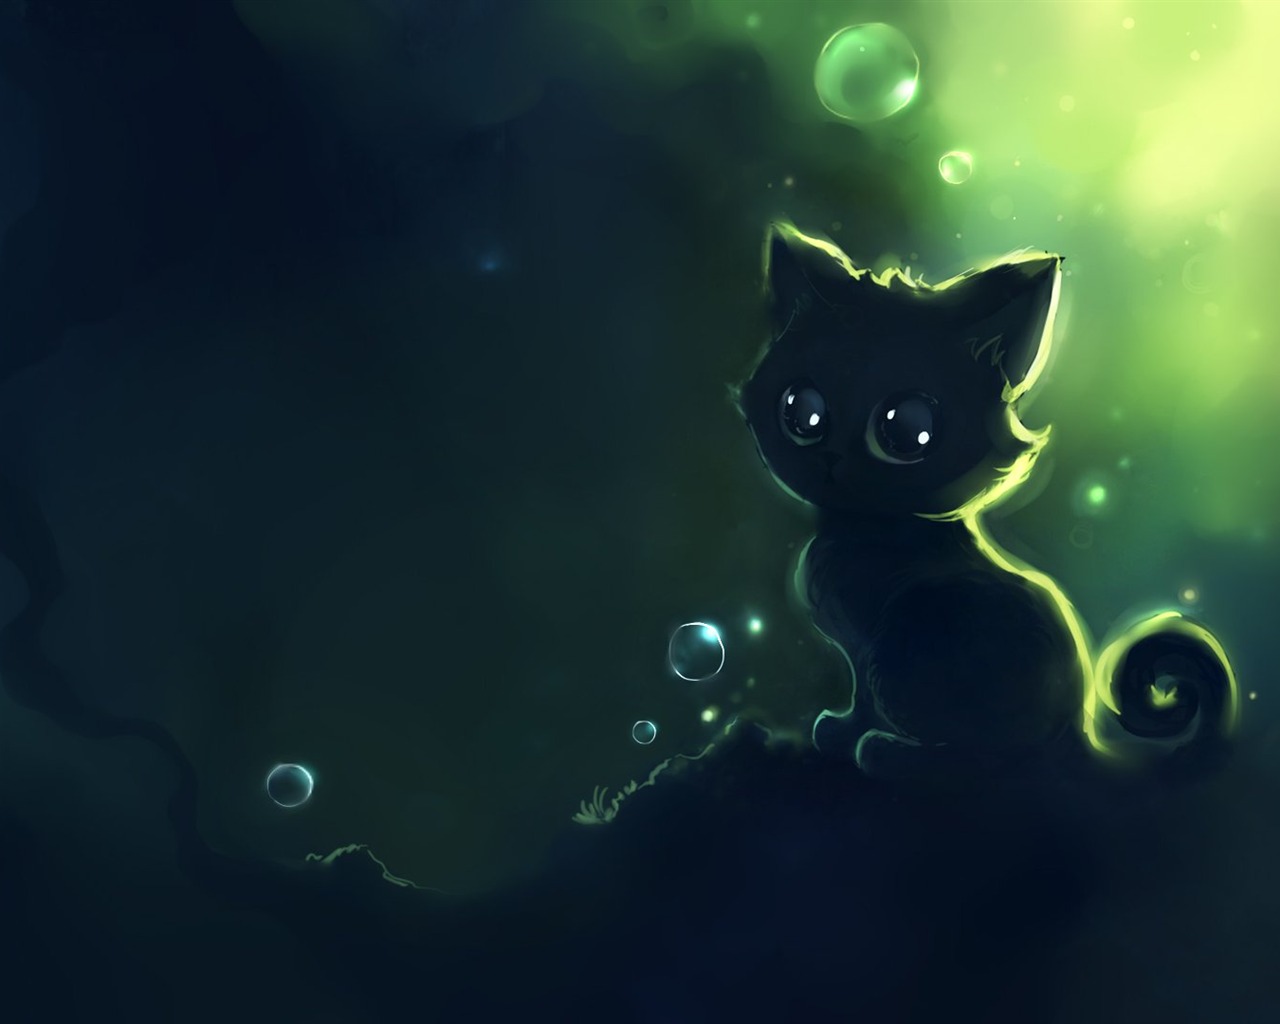 Apofiss pequeño gato negro papel pintado acuarelas #7 - 1280x1024